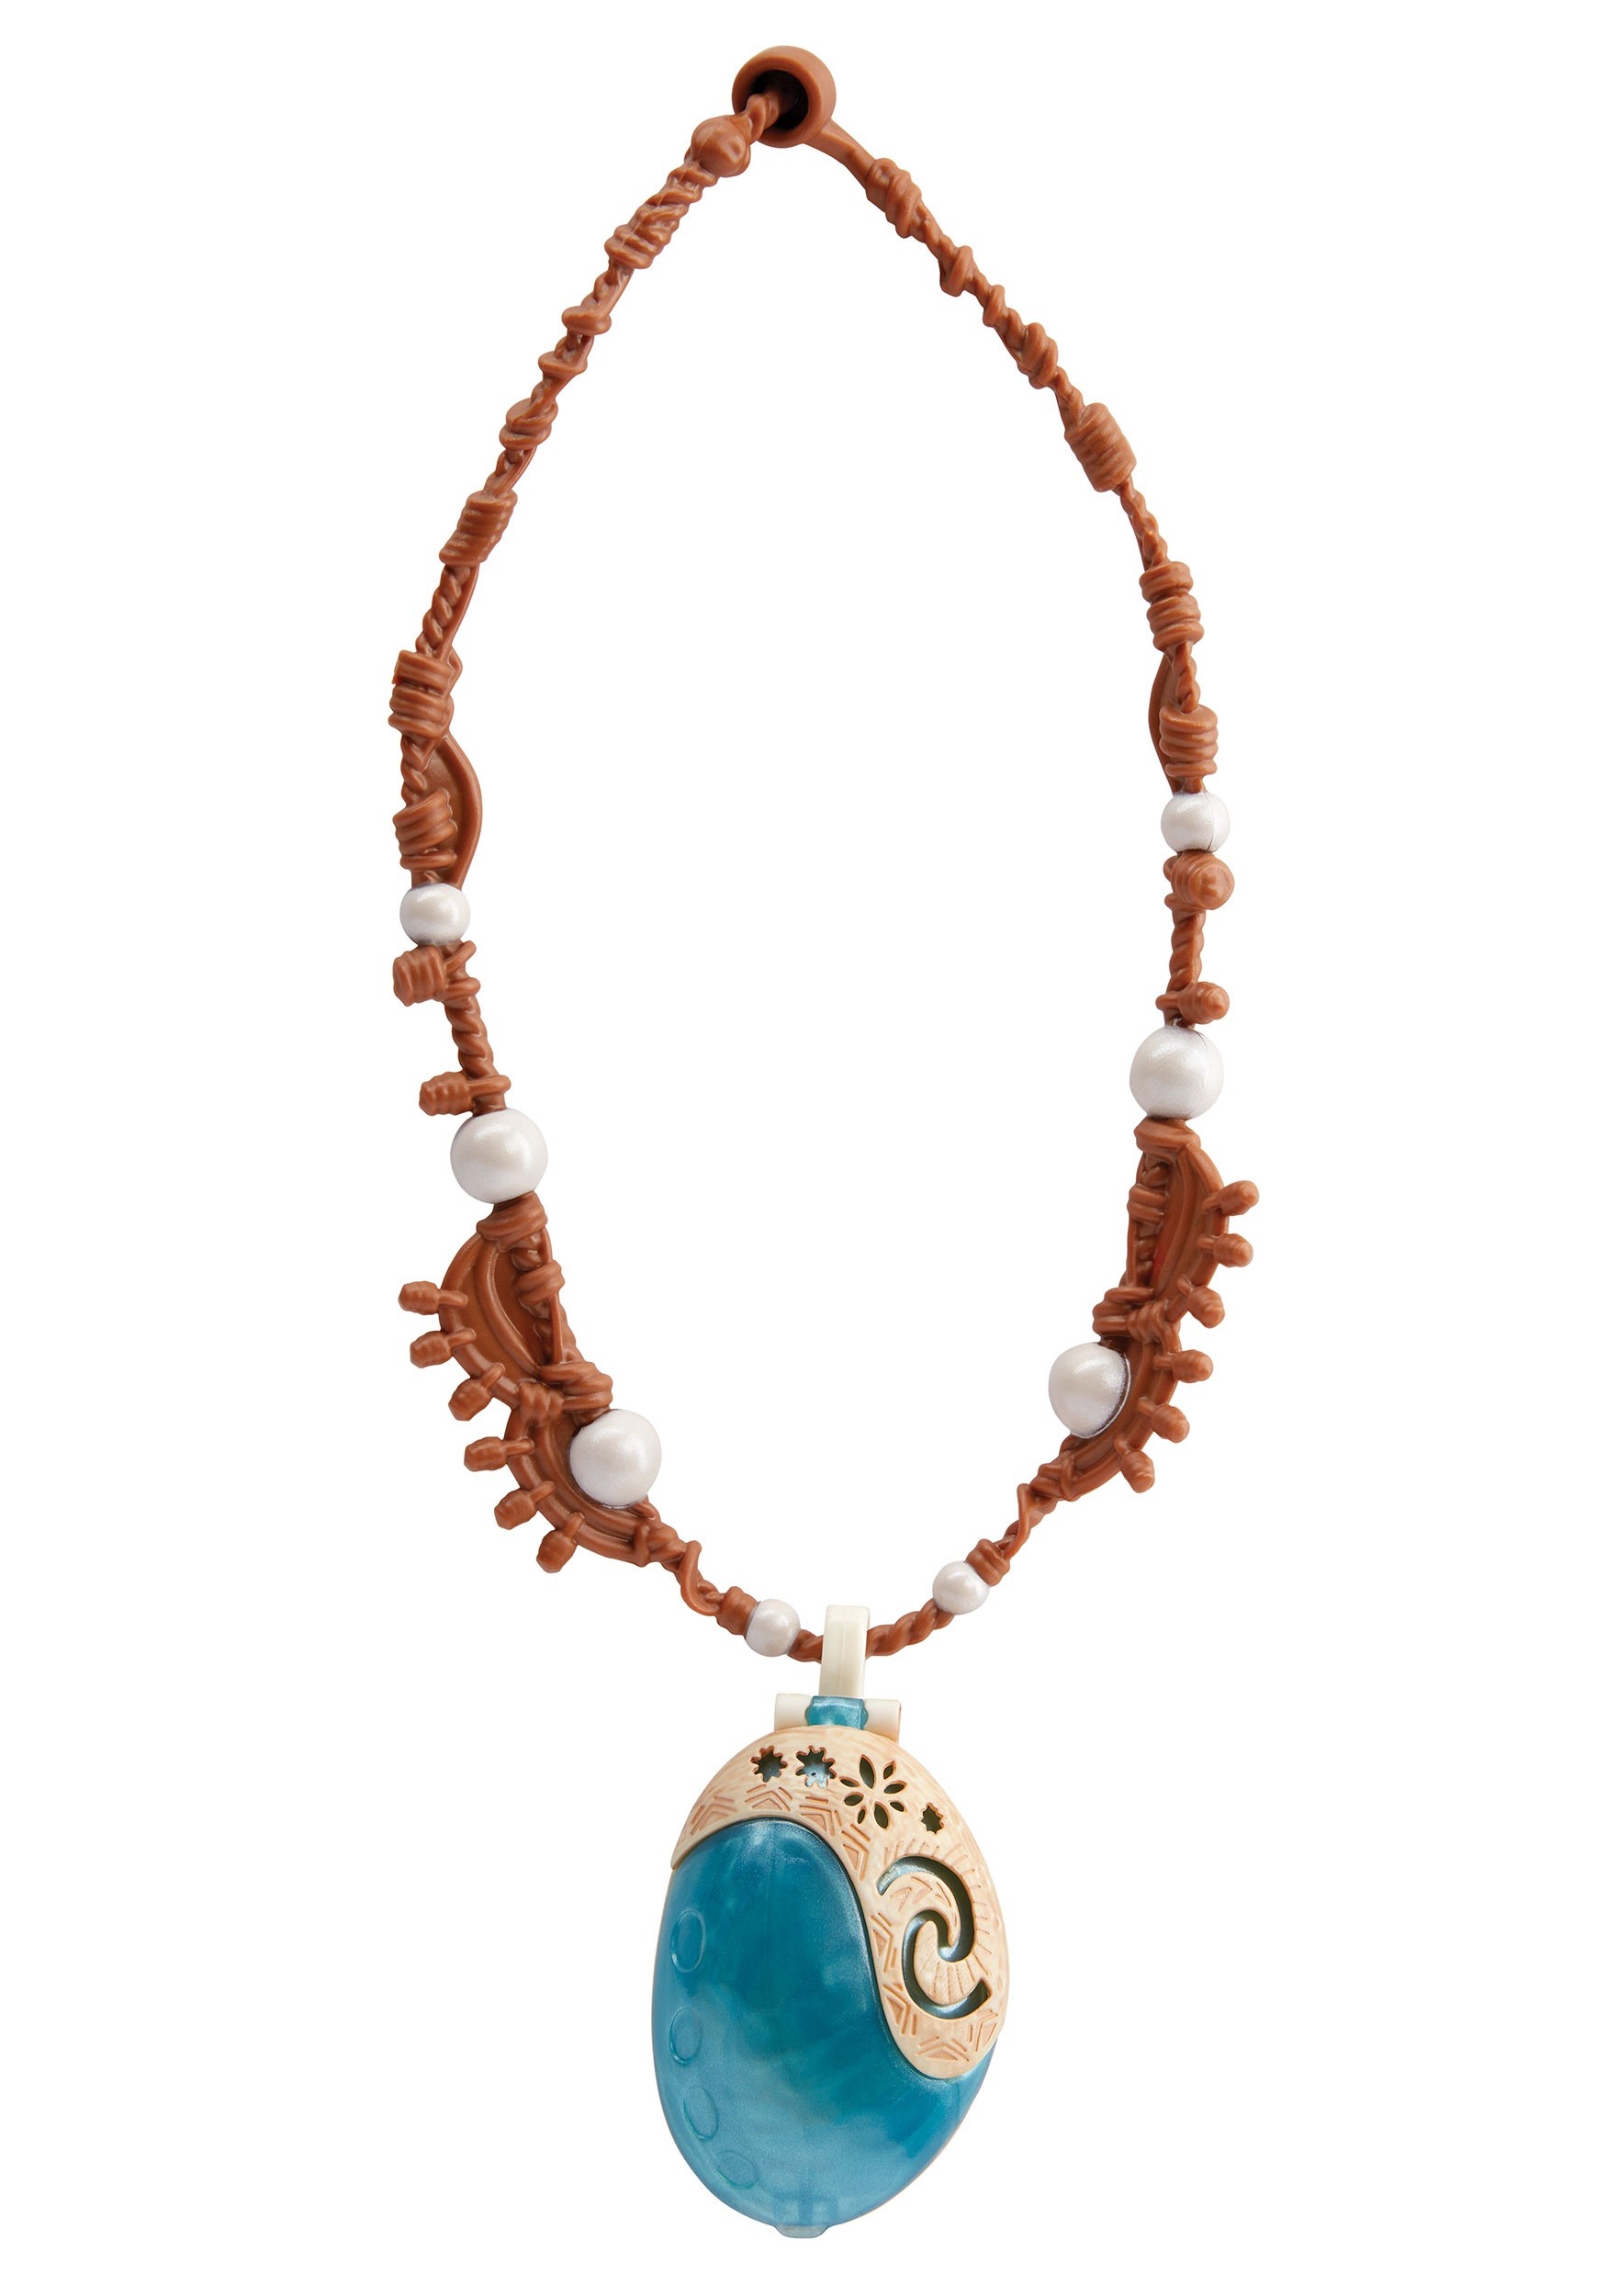 Moana Movie Necklace | Disney Jewelry